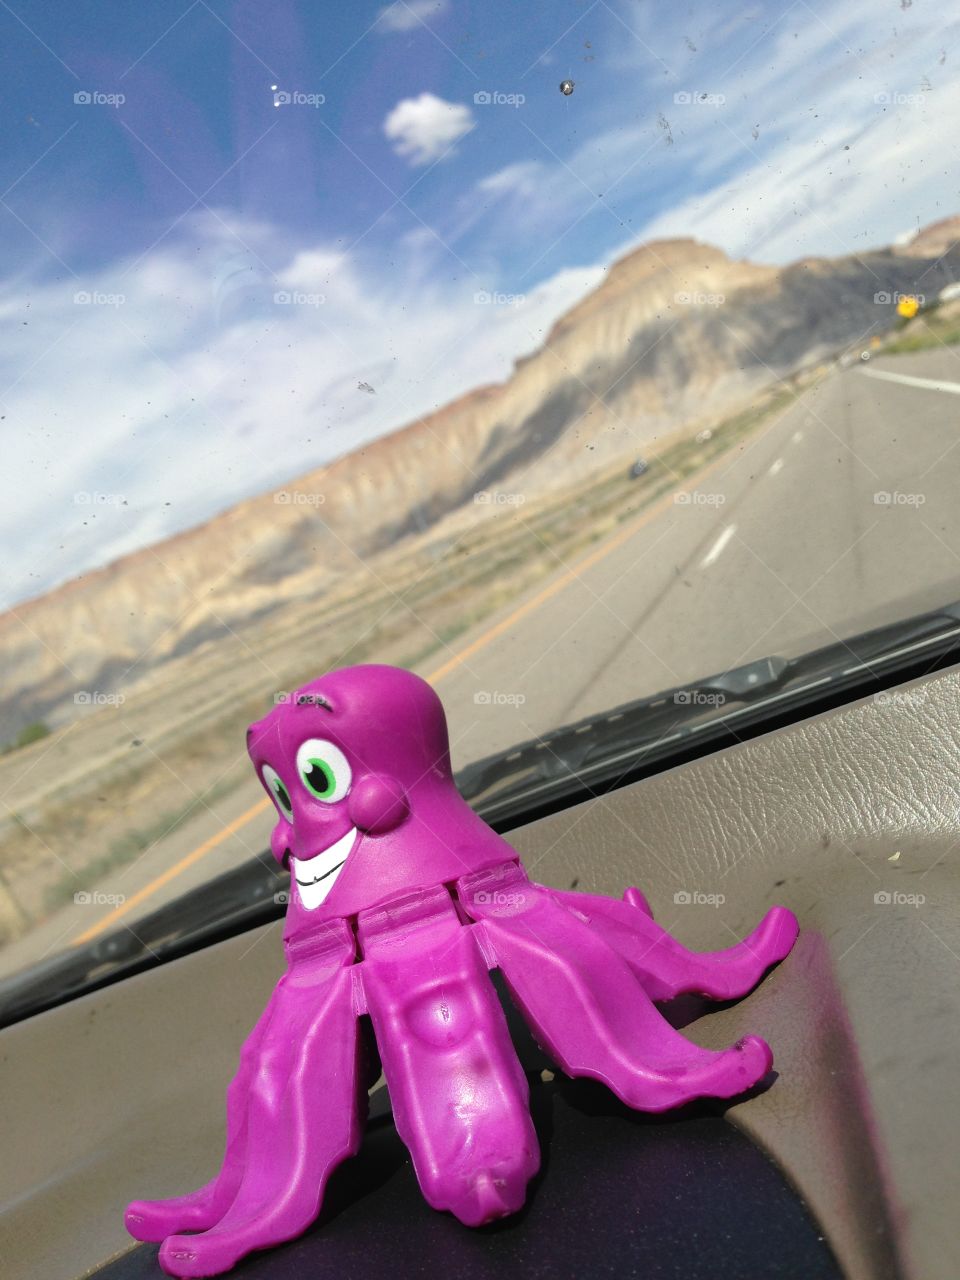 Dashboard Driver. Our dashboard passenger rides through Utah 